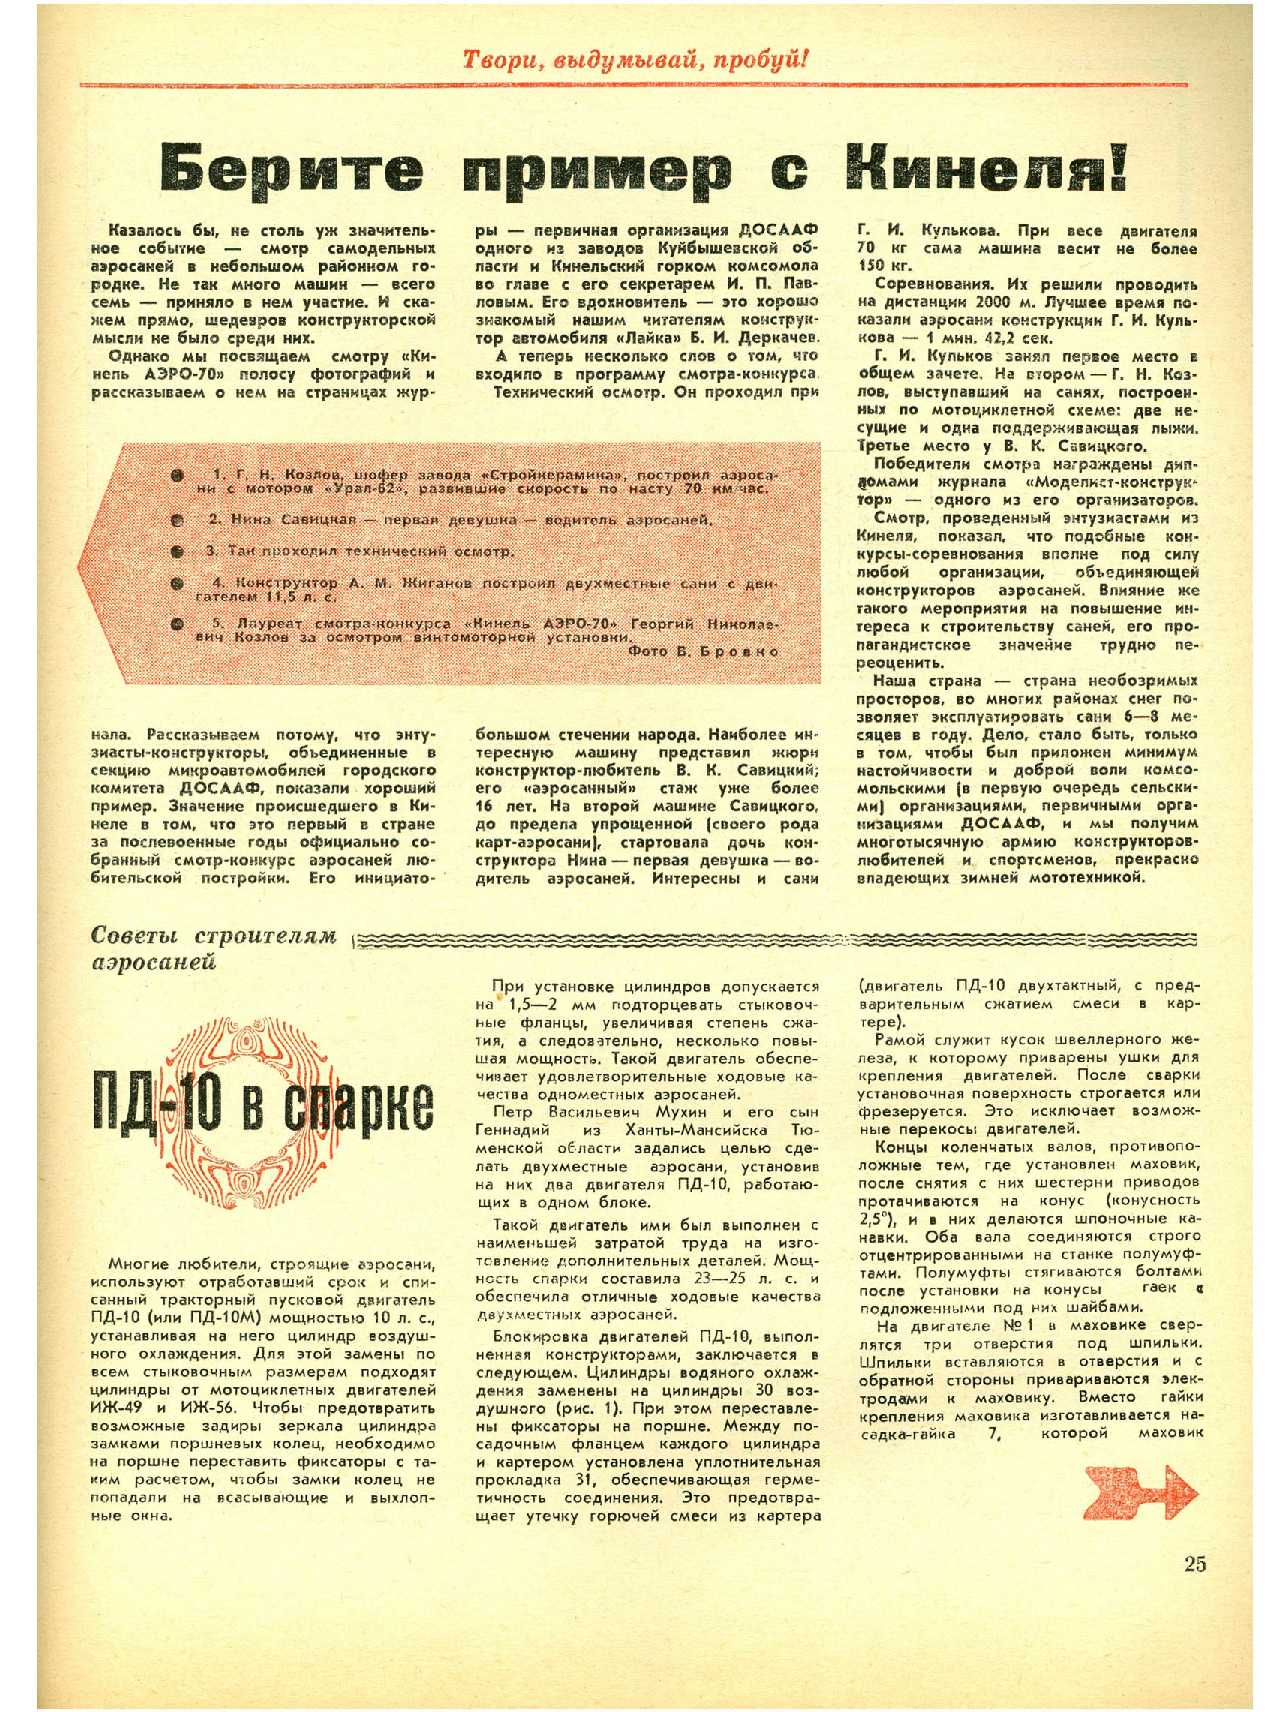 МК 10, 1970, 25 c.